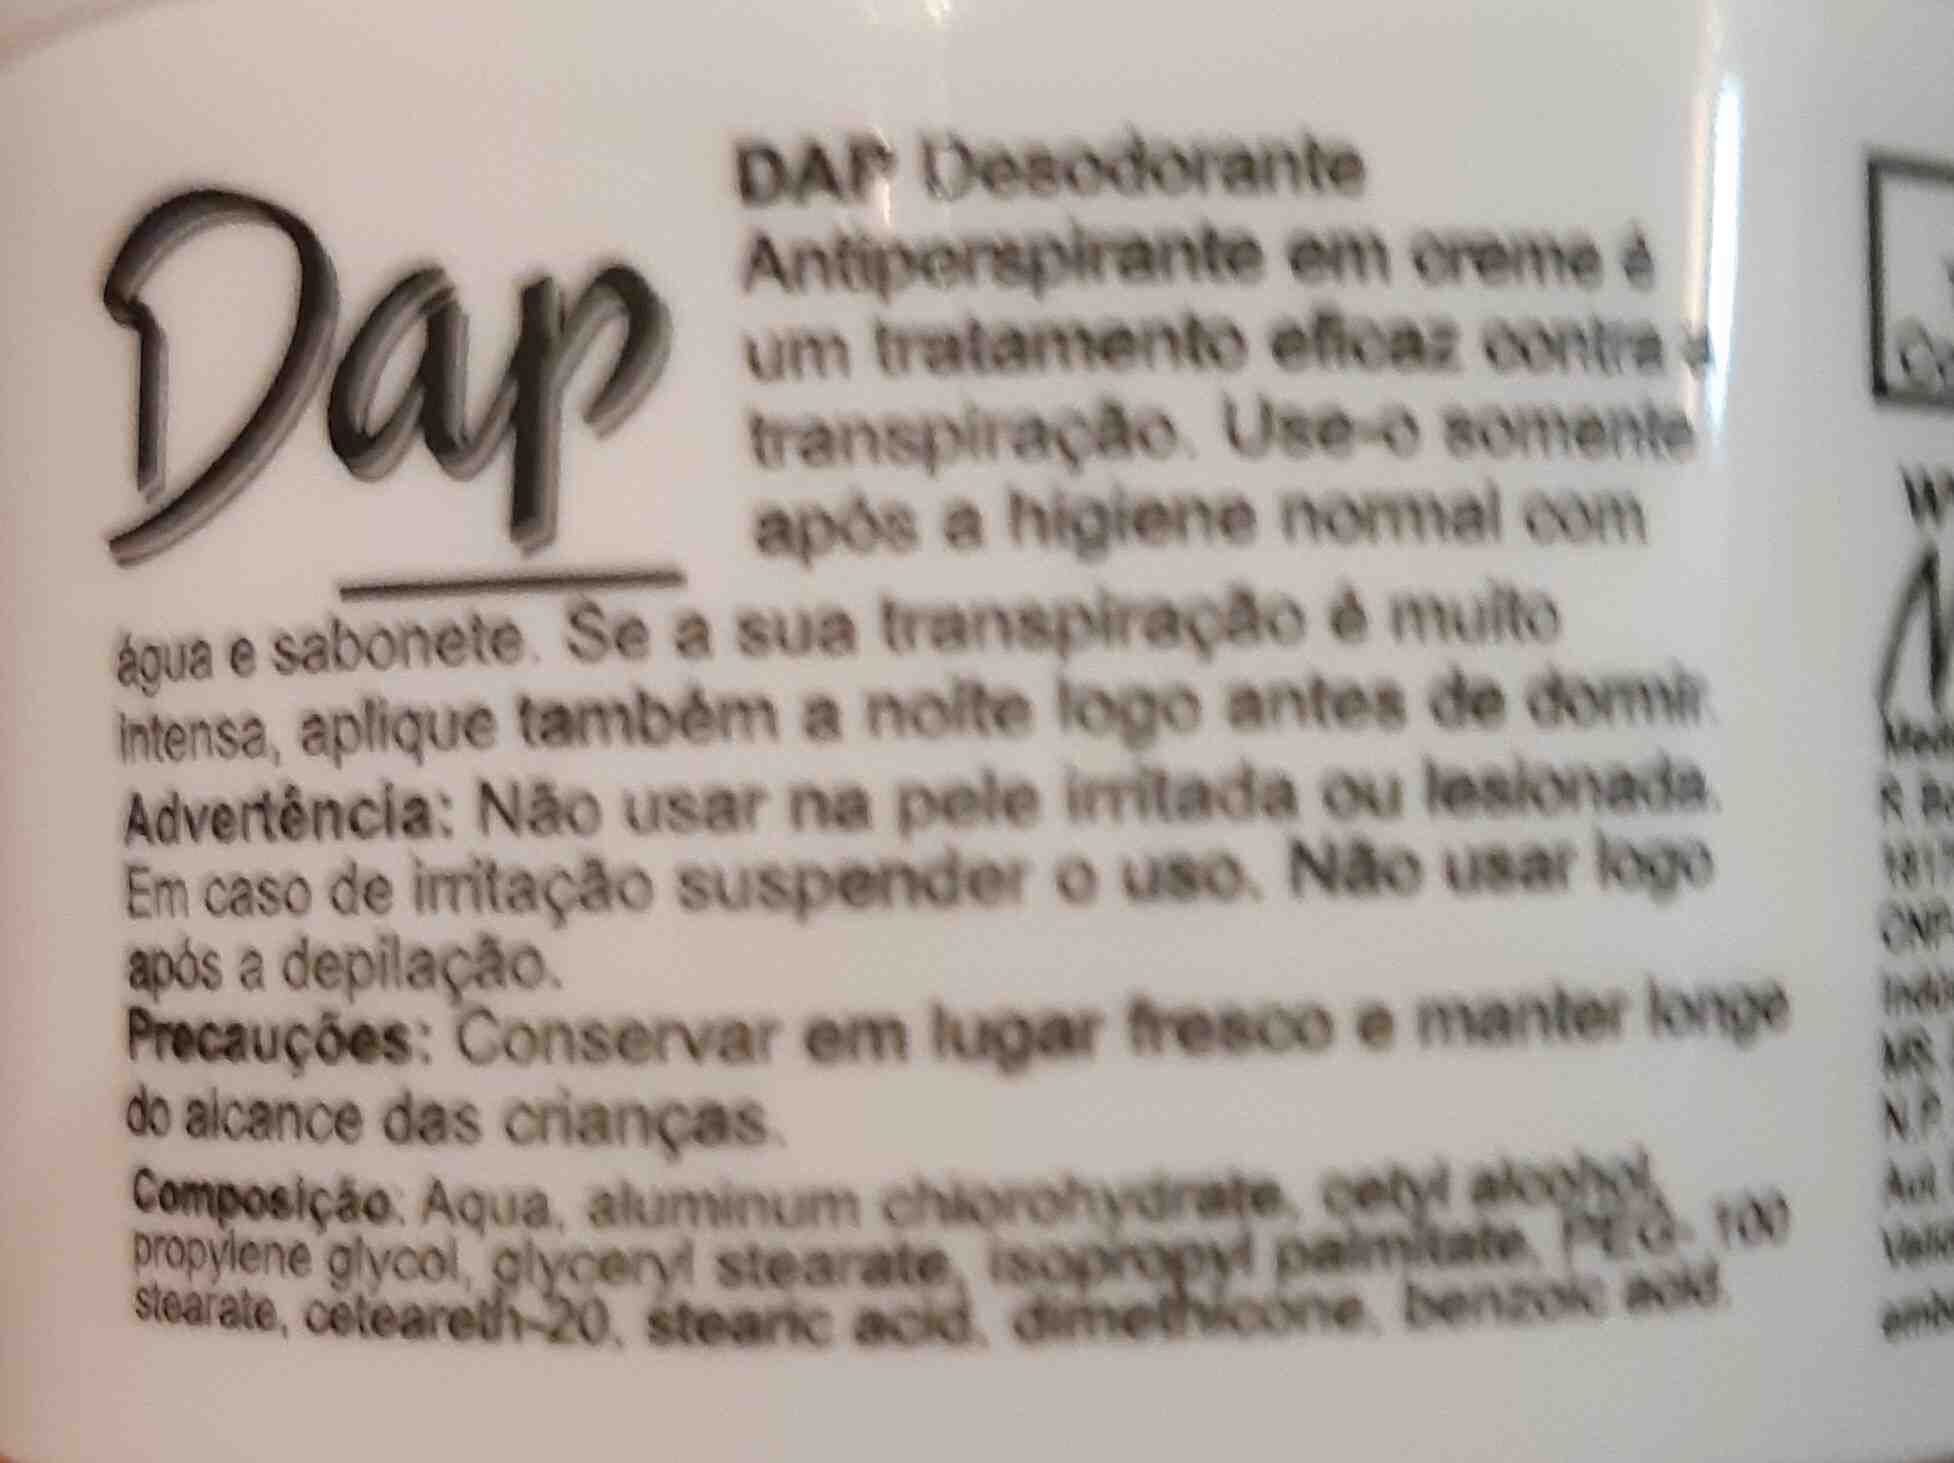 Dap desodorante - Ingredients - en